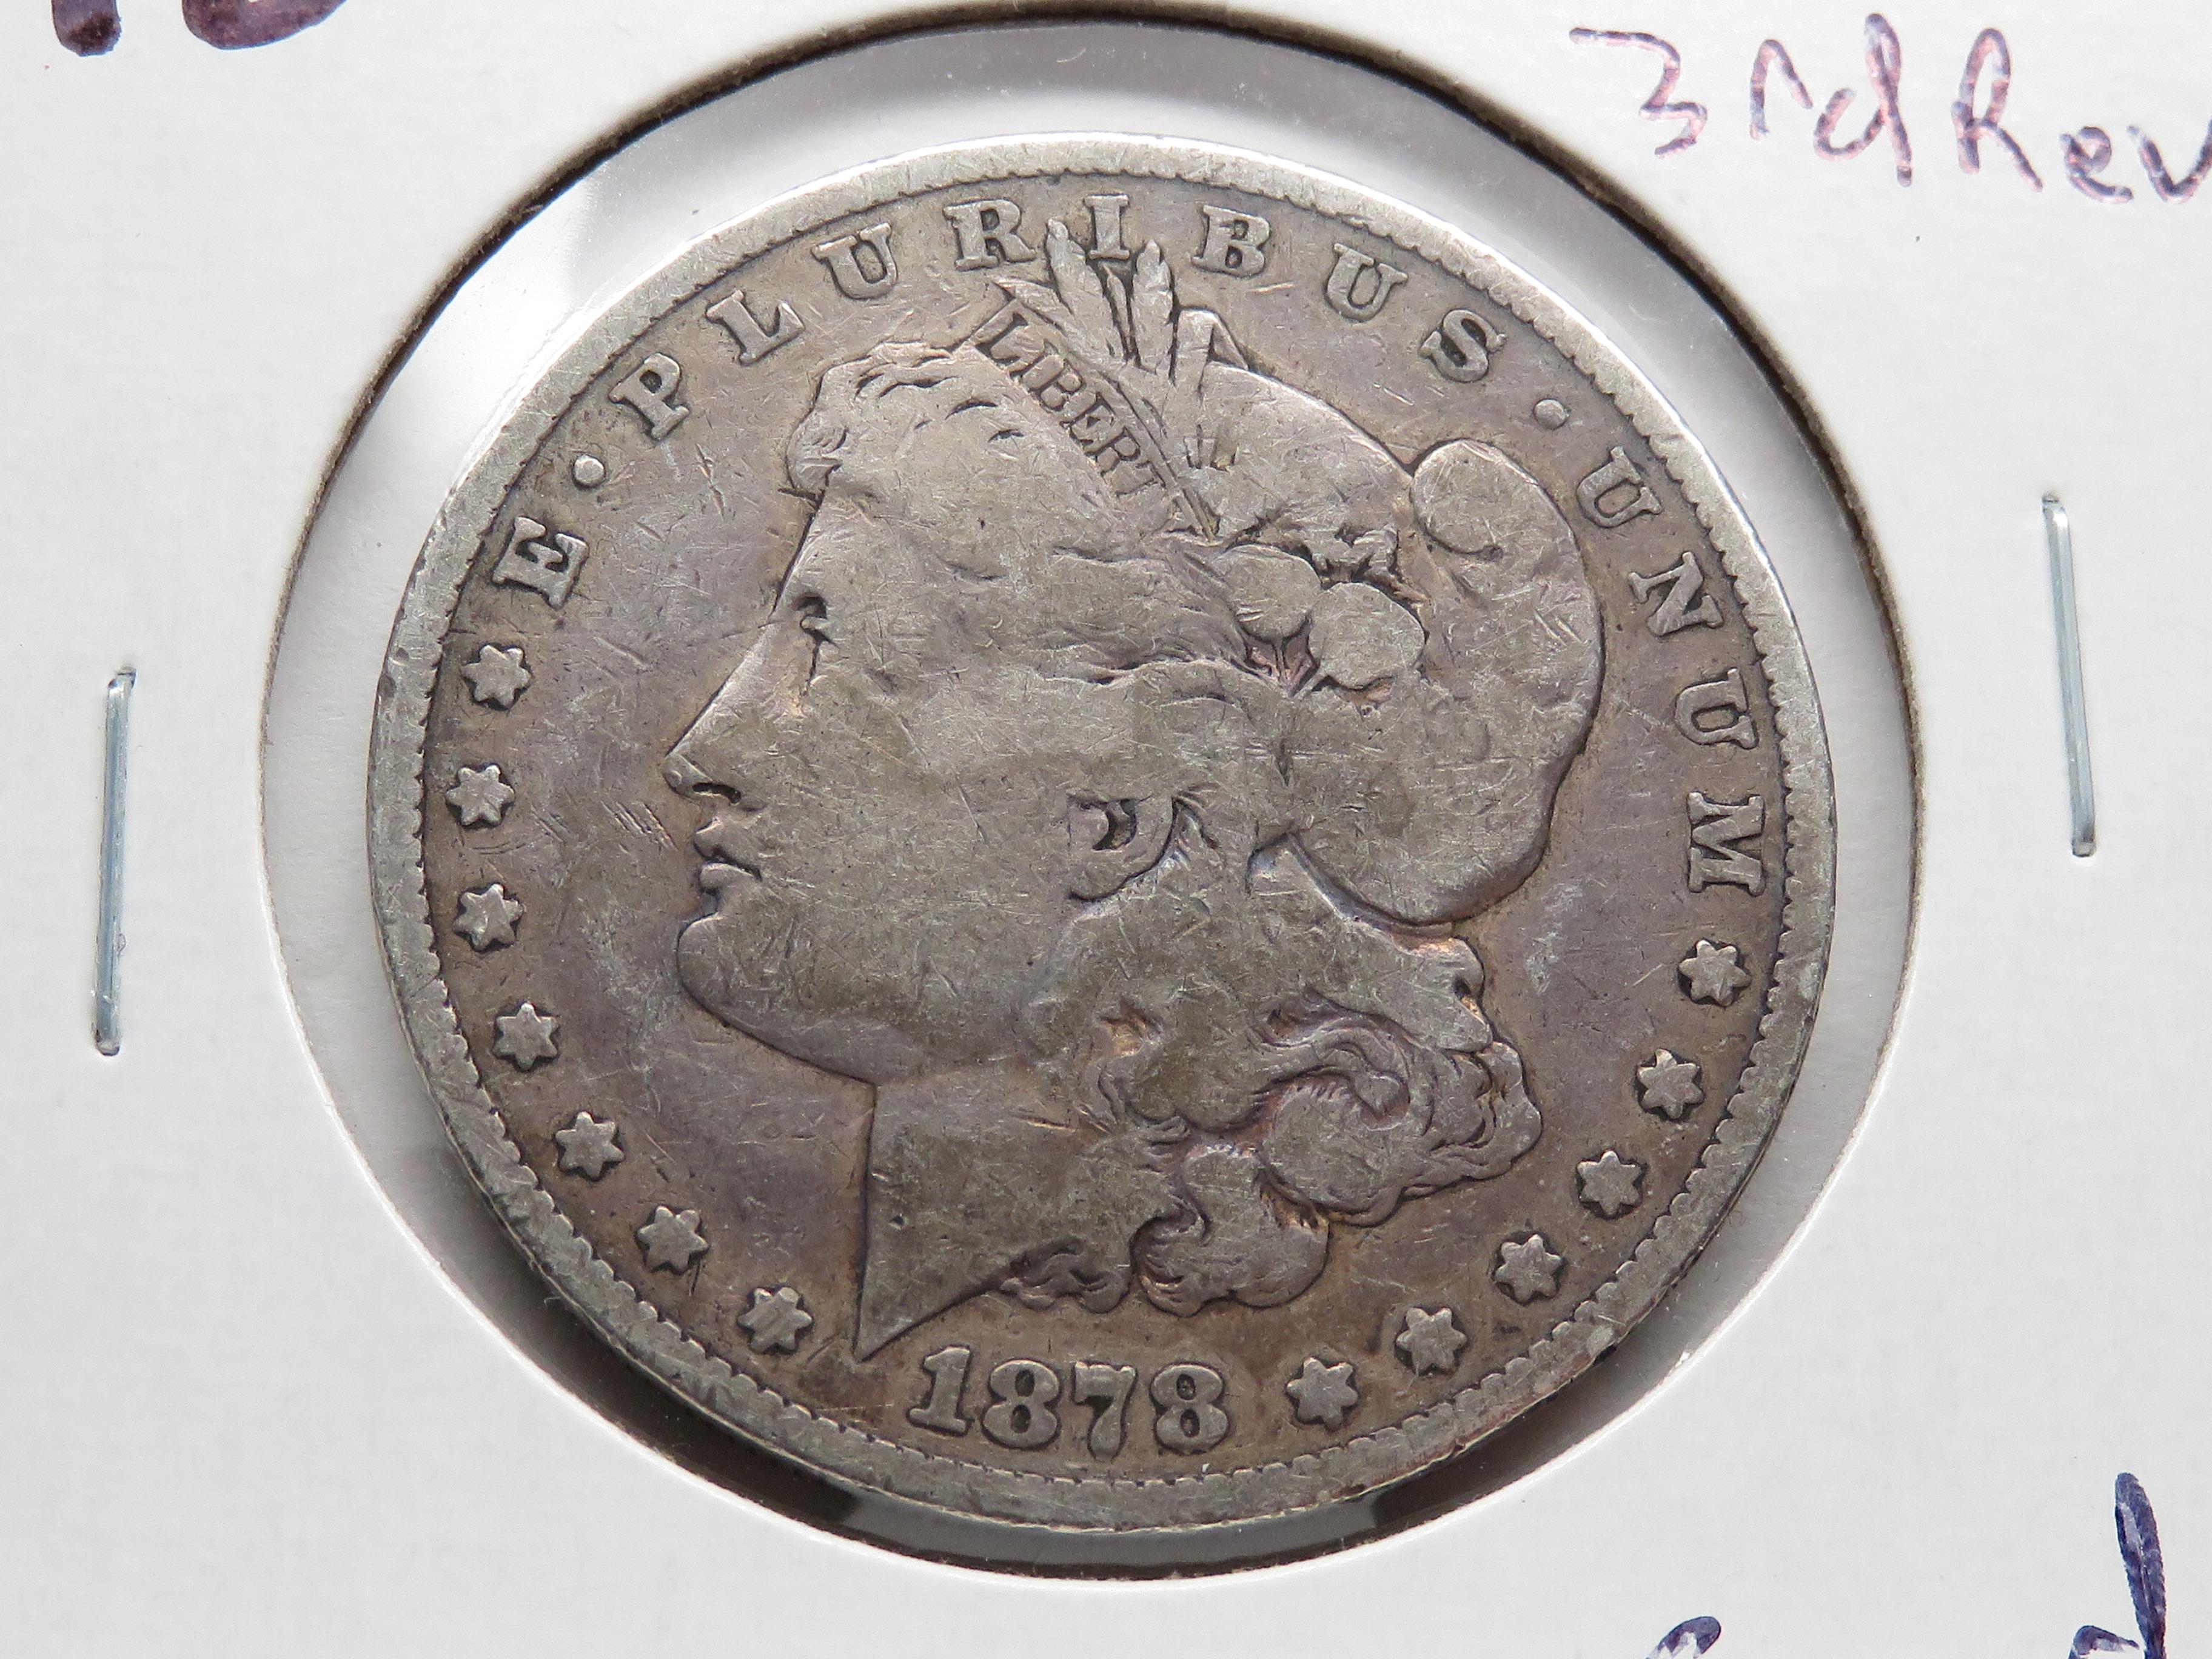 3 Morgan $: 1878 3rd rev G, 1889-O G, 1900-O F